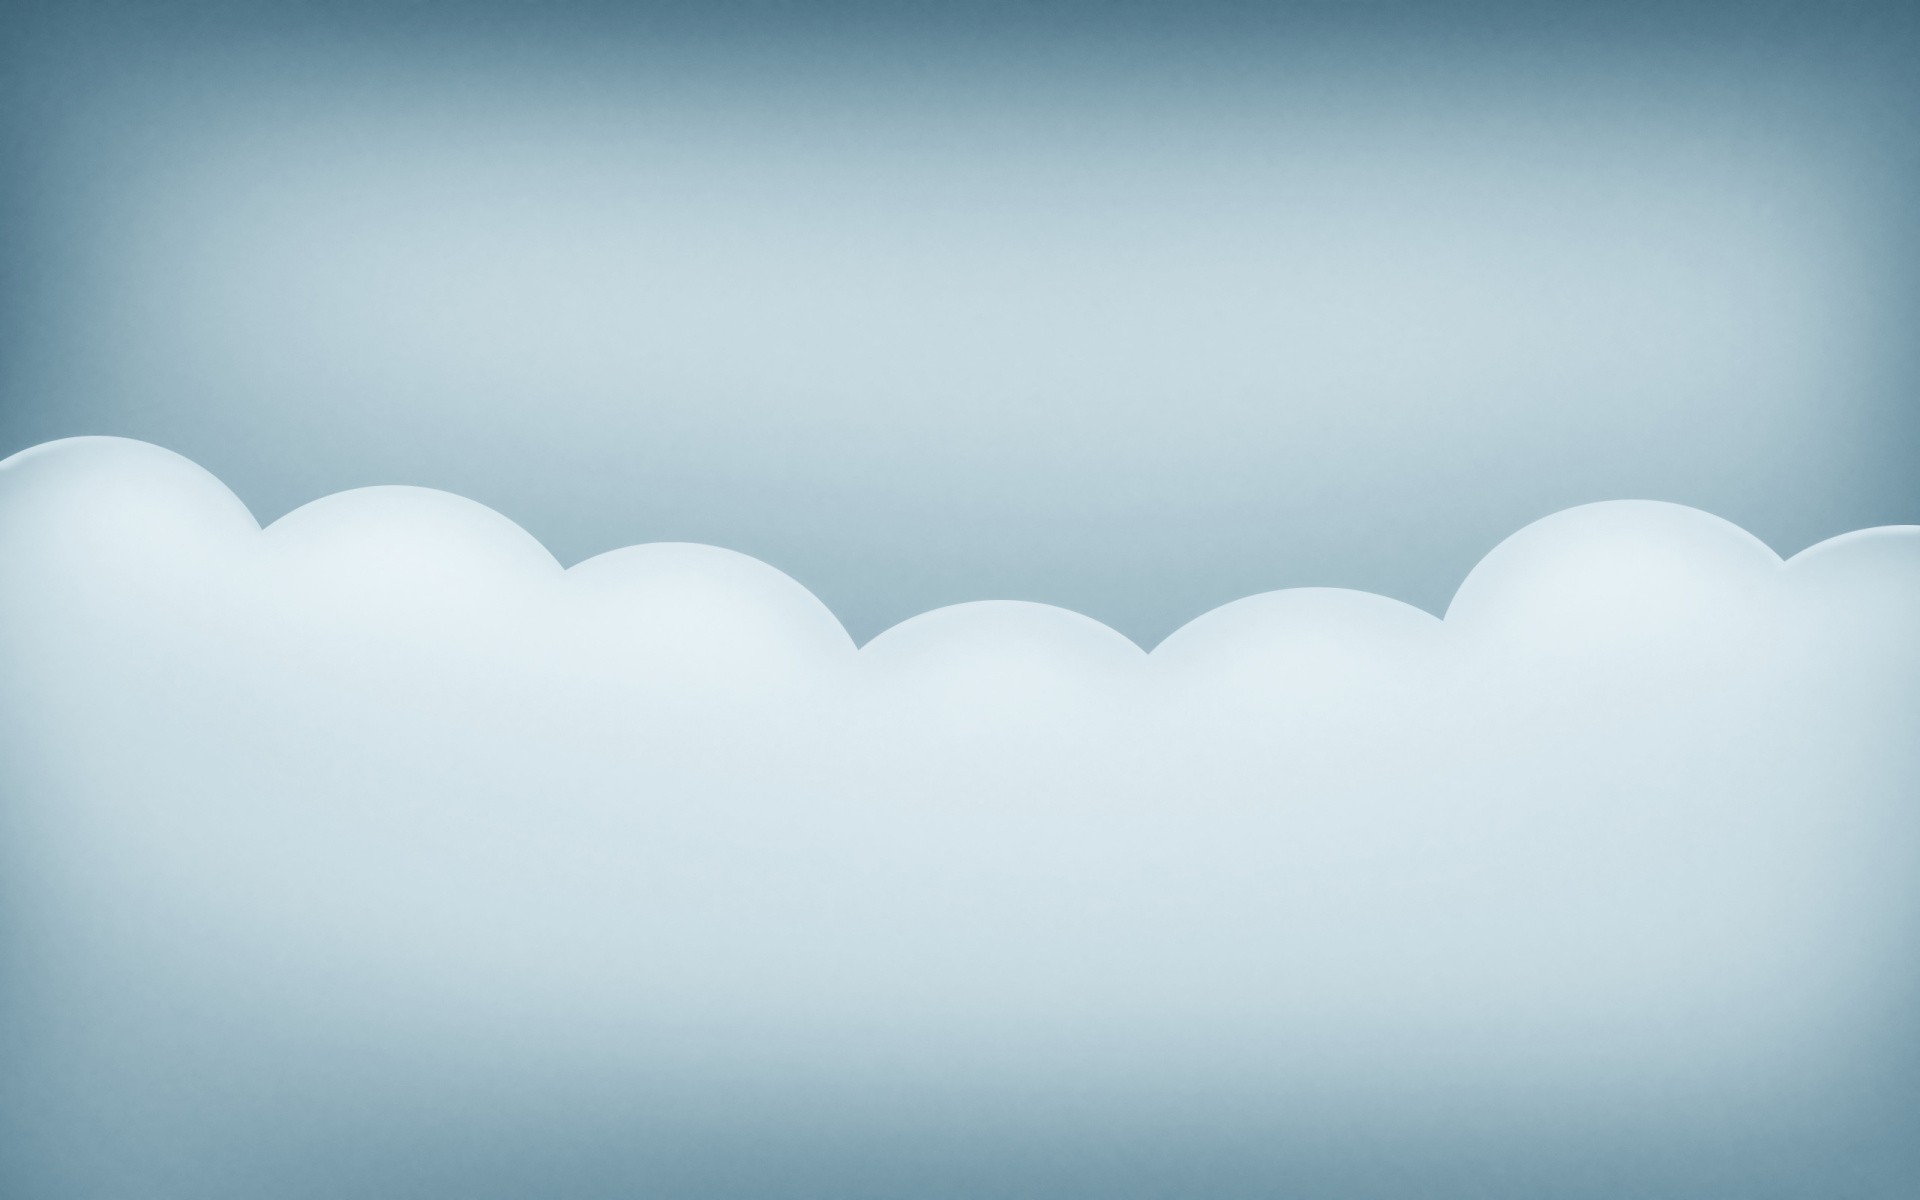 Abstract cartoon cloud art backgrounds